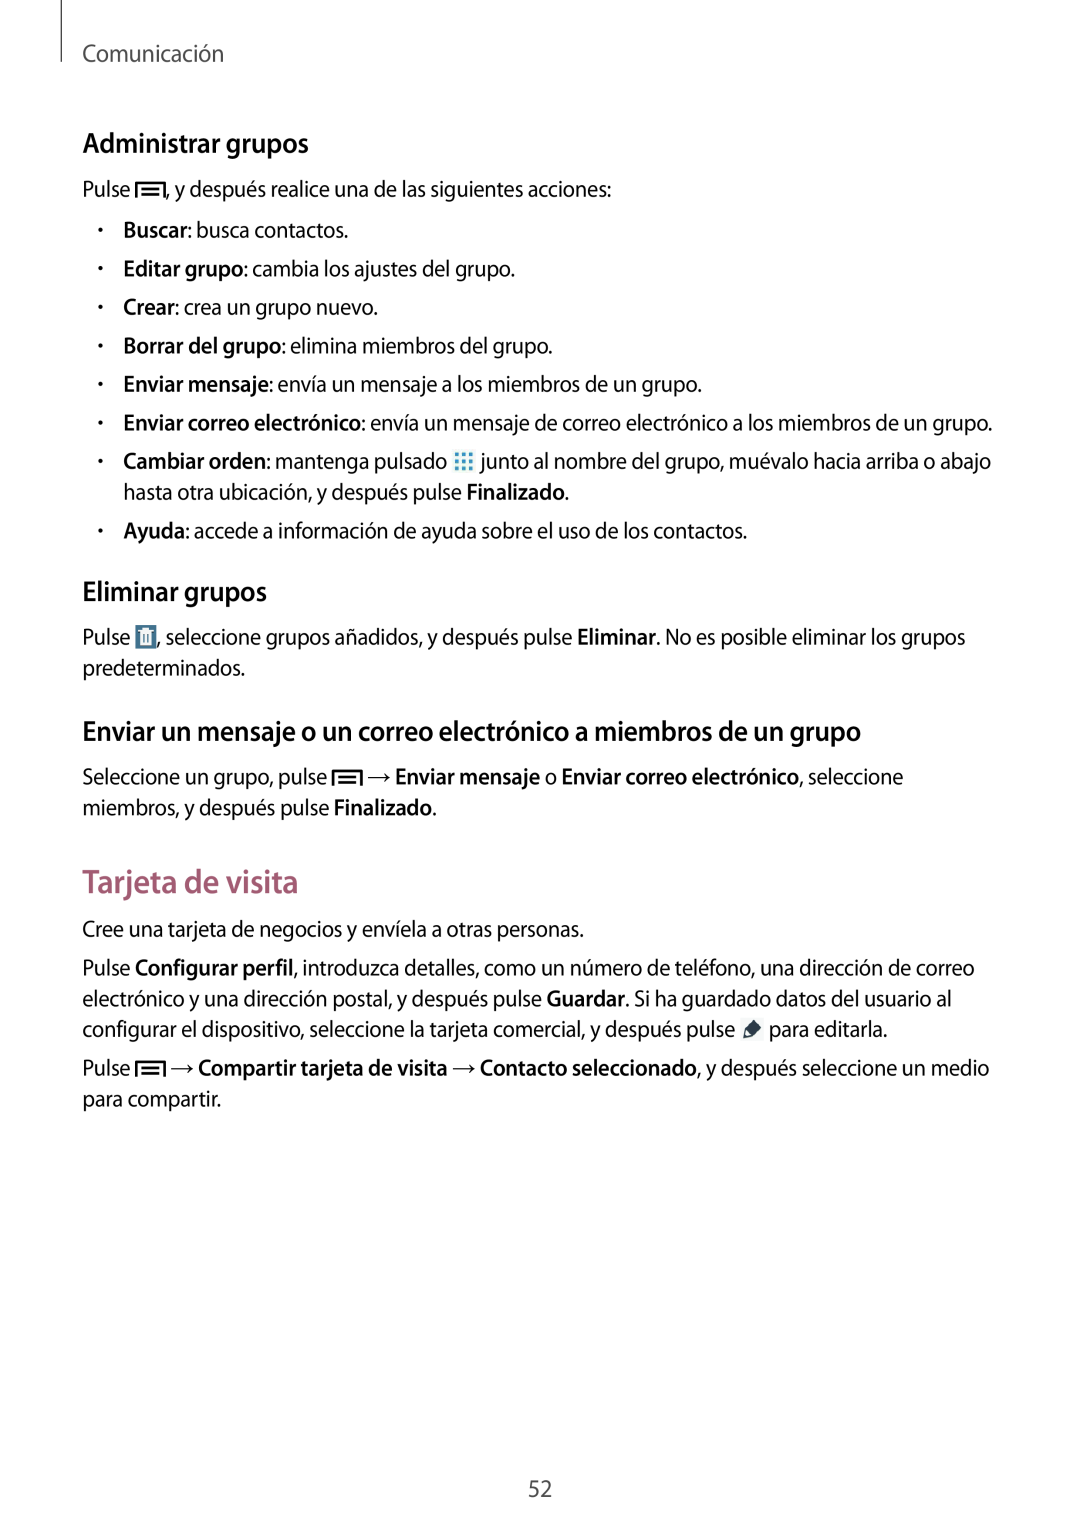 Samsung SM-T3150ZWAATL manual Tarjeta de visita, Administrar grupos, Eliminar grupos, Comunicación 